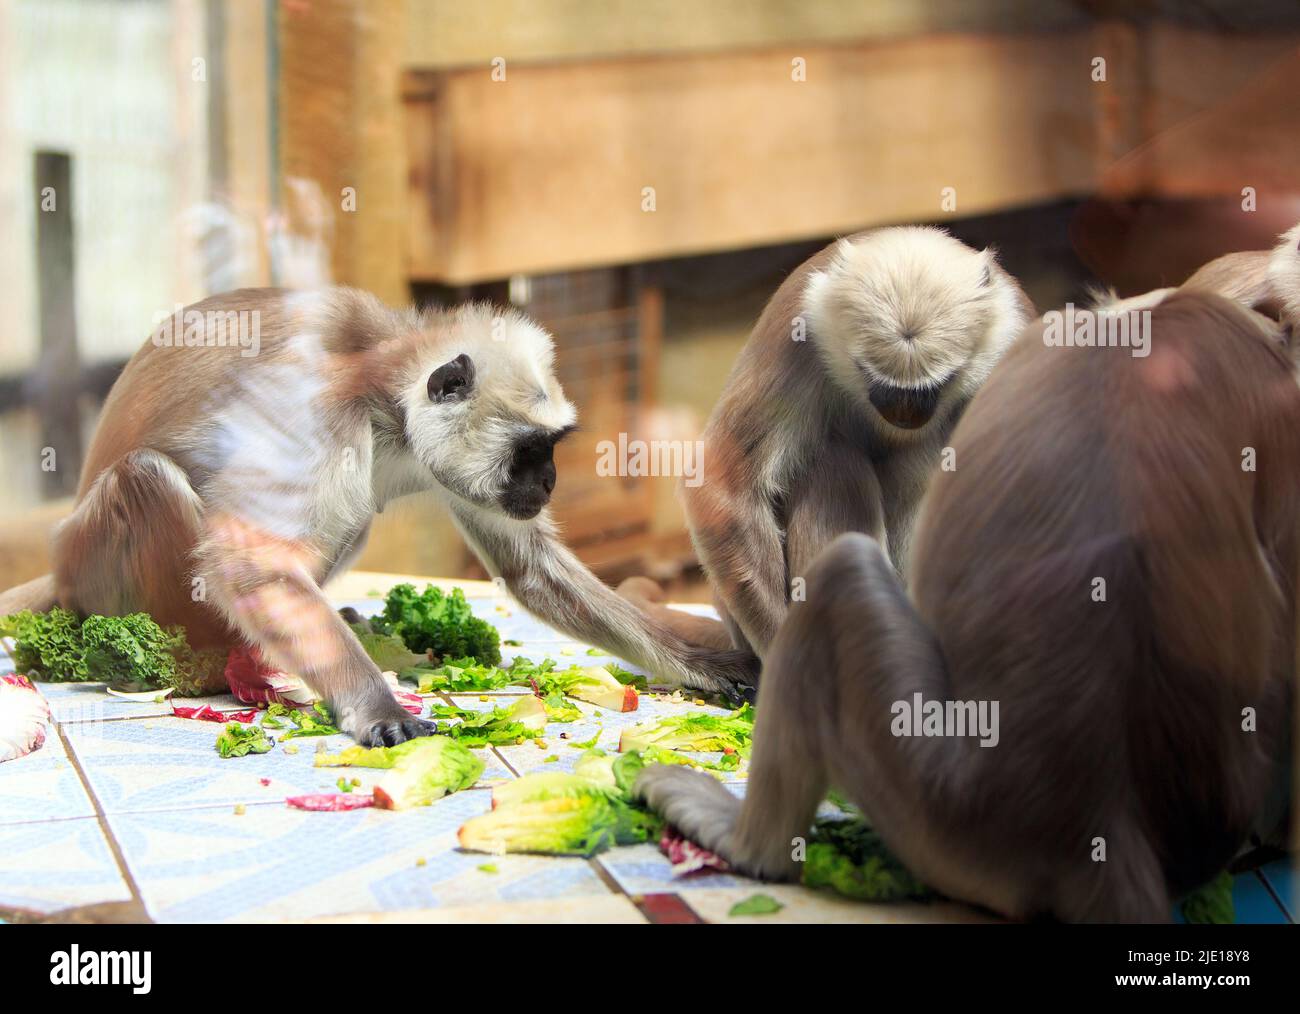 Alimentazione di scimmia su un tavolo. Scattata attraverso una finestra di visualizzazione in vetro. Foto Stock